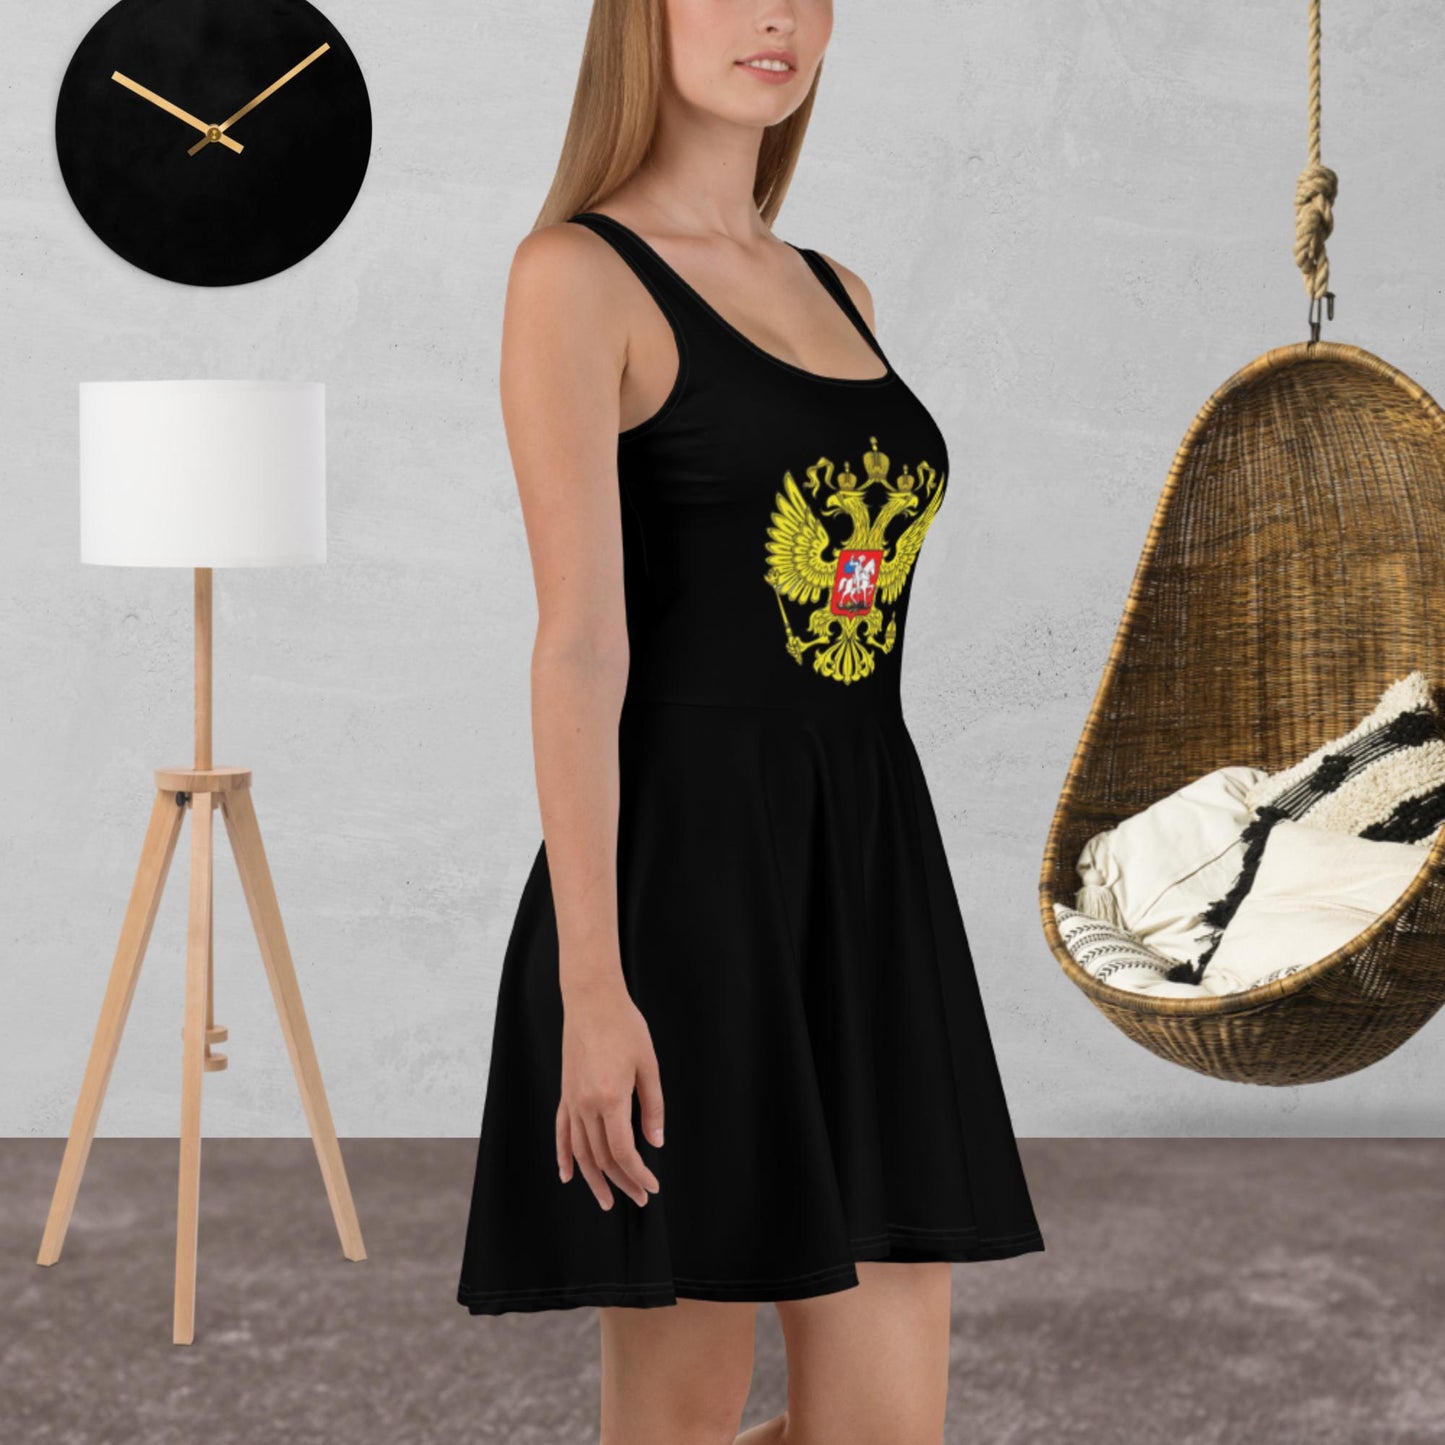 Skater-Kleid mit Russland-Wappen in schwarz